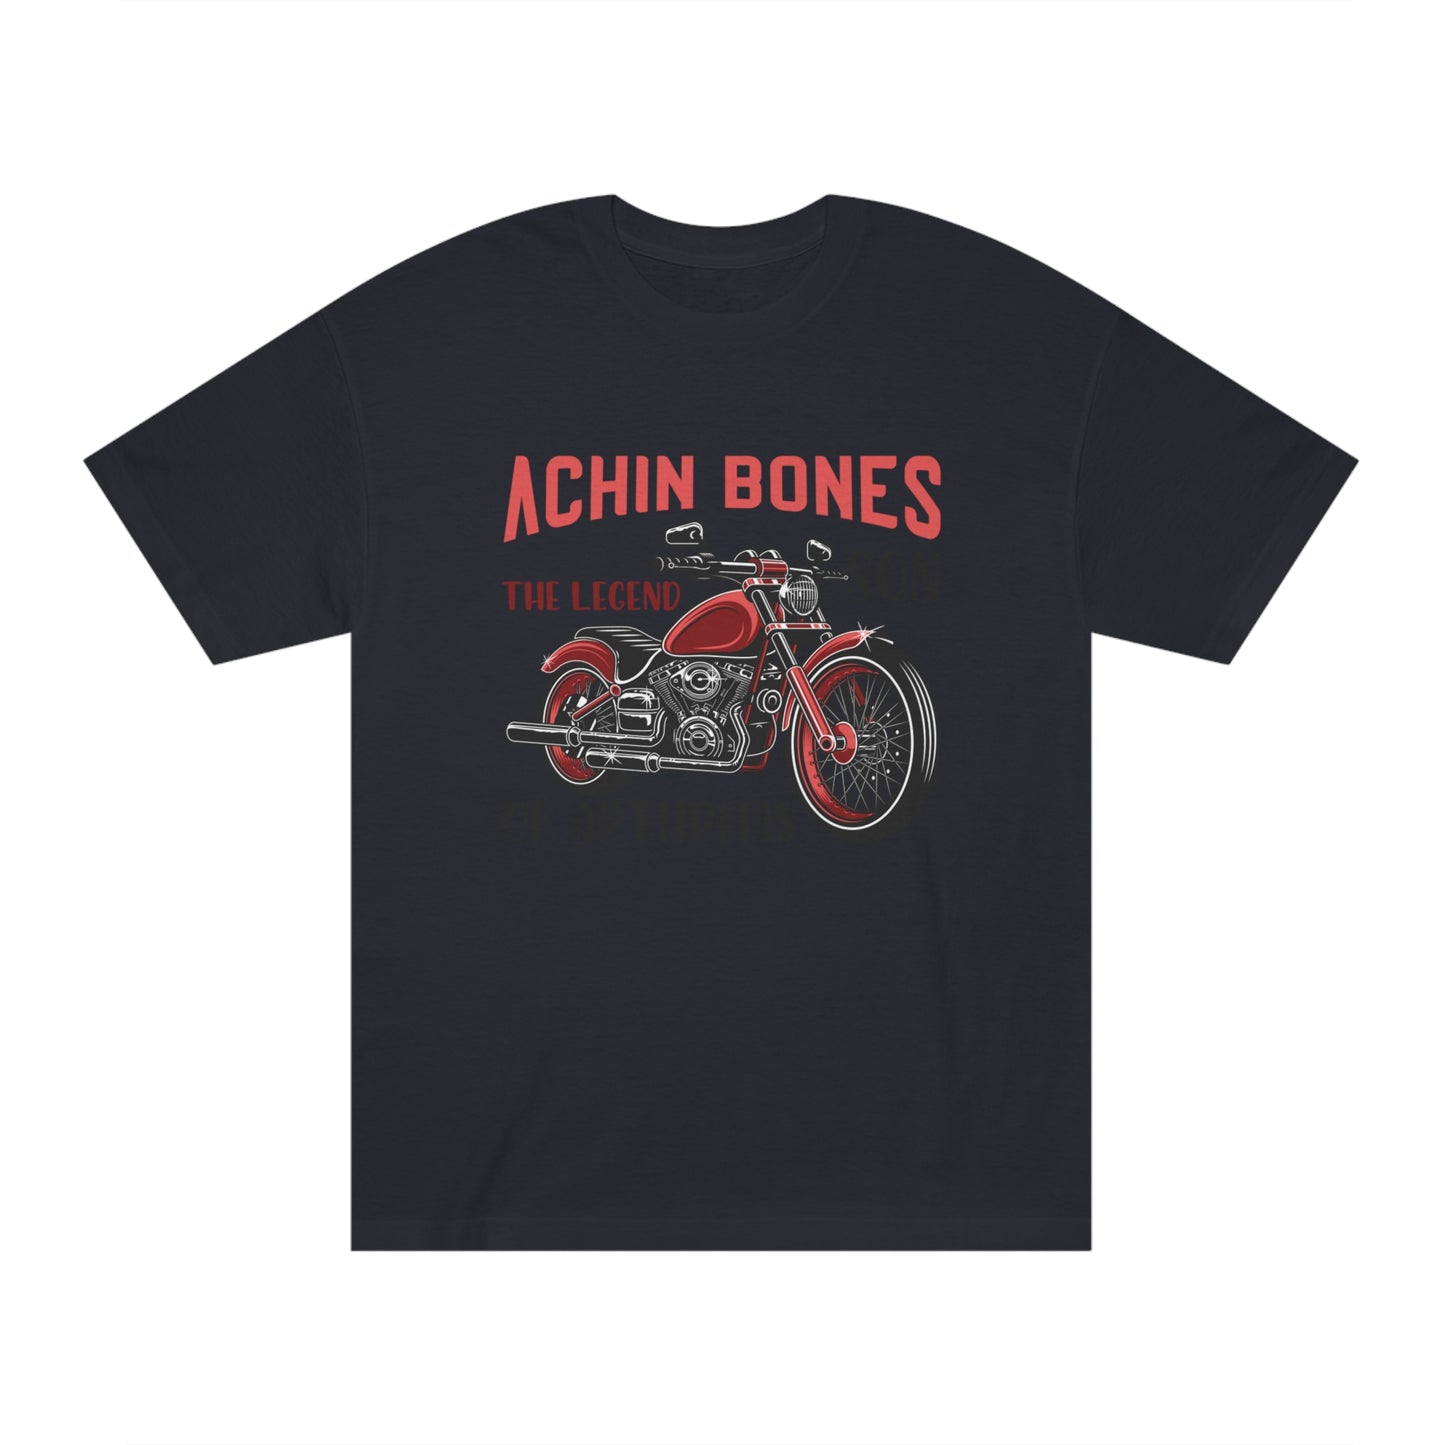 Achin bones Unisex Classic Tee